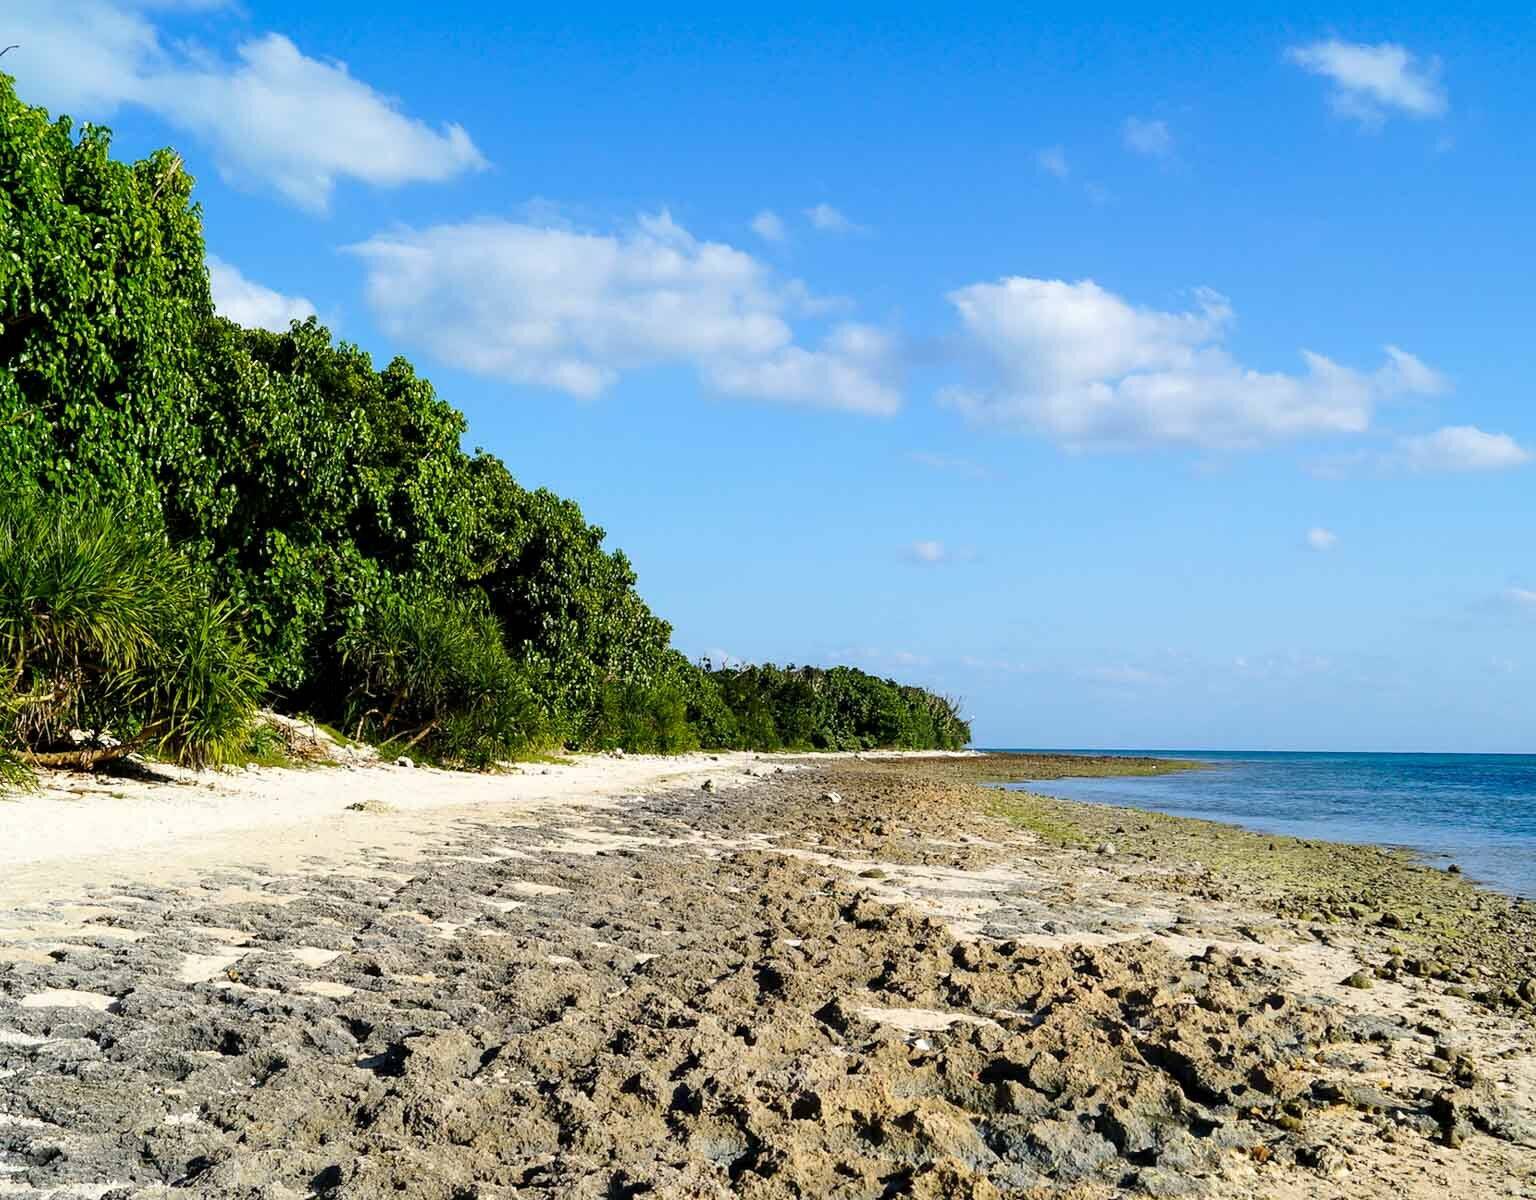 Das Ufer des einsamen Strandes von Kaiji, der japanischen Insel Taketomi der japanischen Yaeyama Inseln, ist von dichten dunkelgrünen Pflanzen gesäumt, der Sandstrand ist mit Steinen durchzogen und das Meer schimmert tief blau.